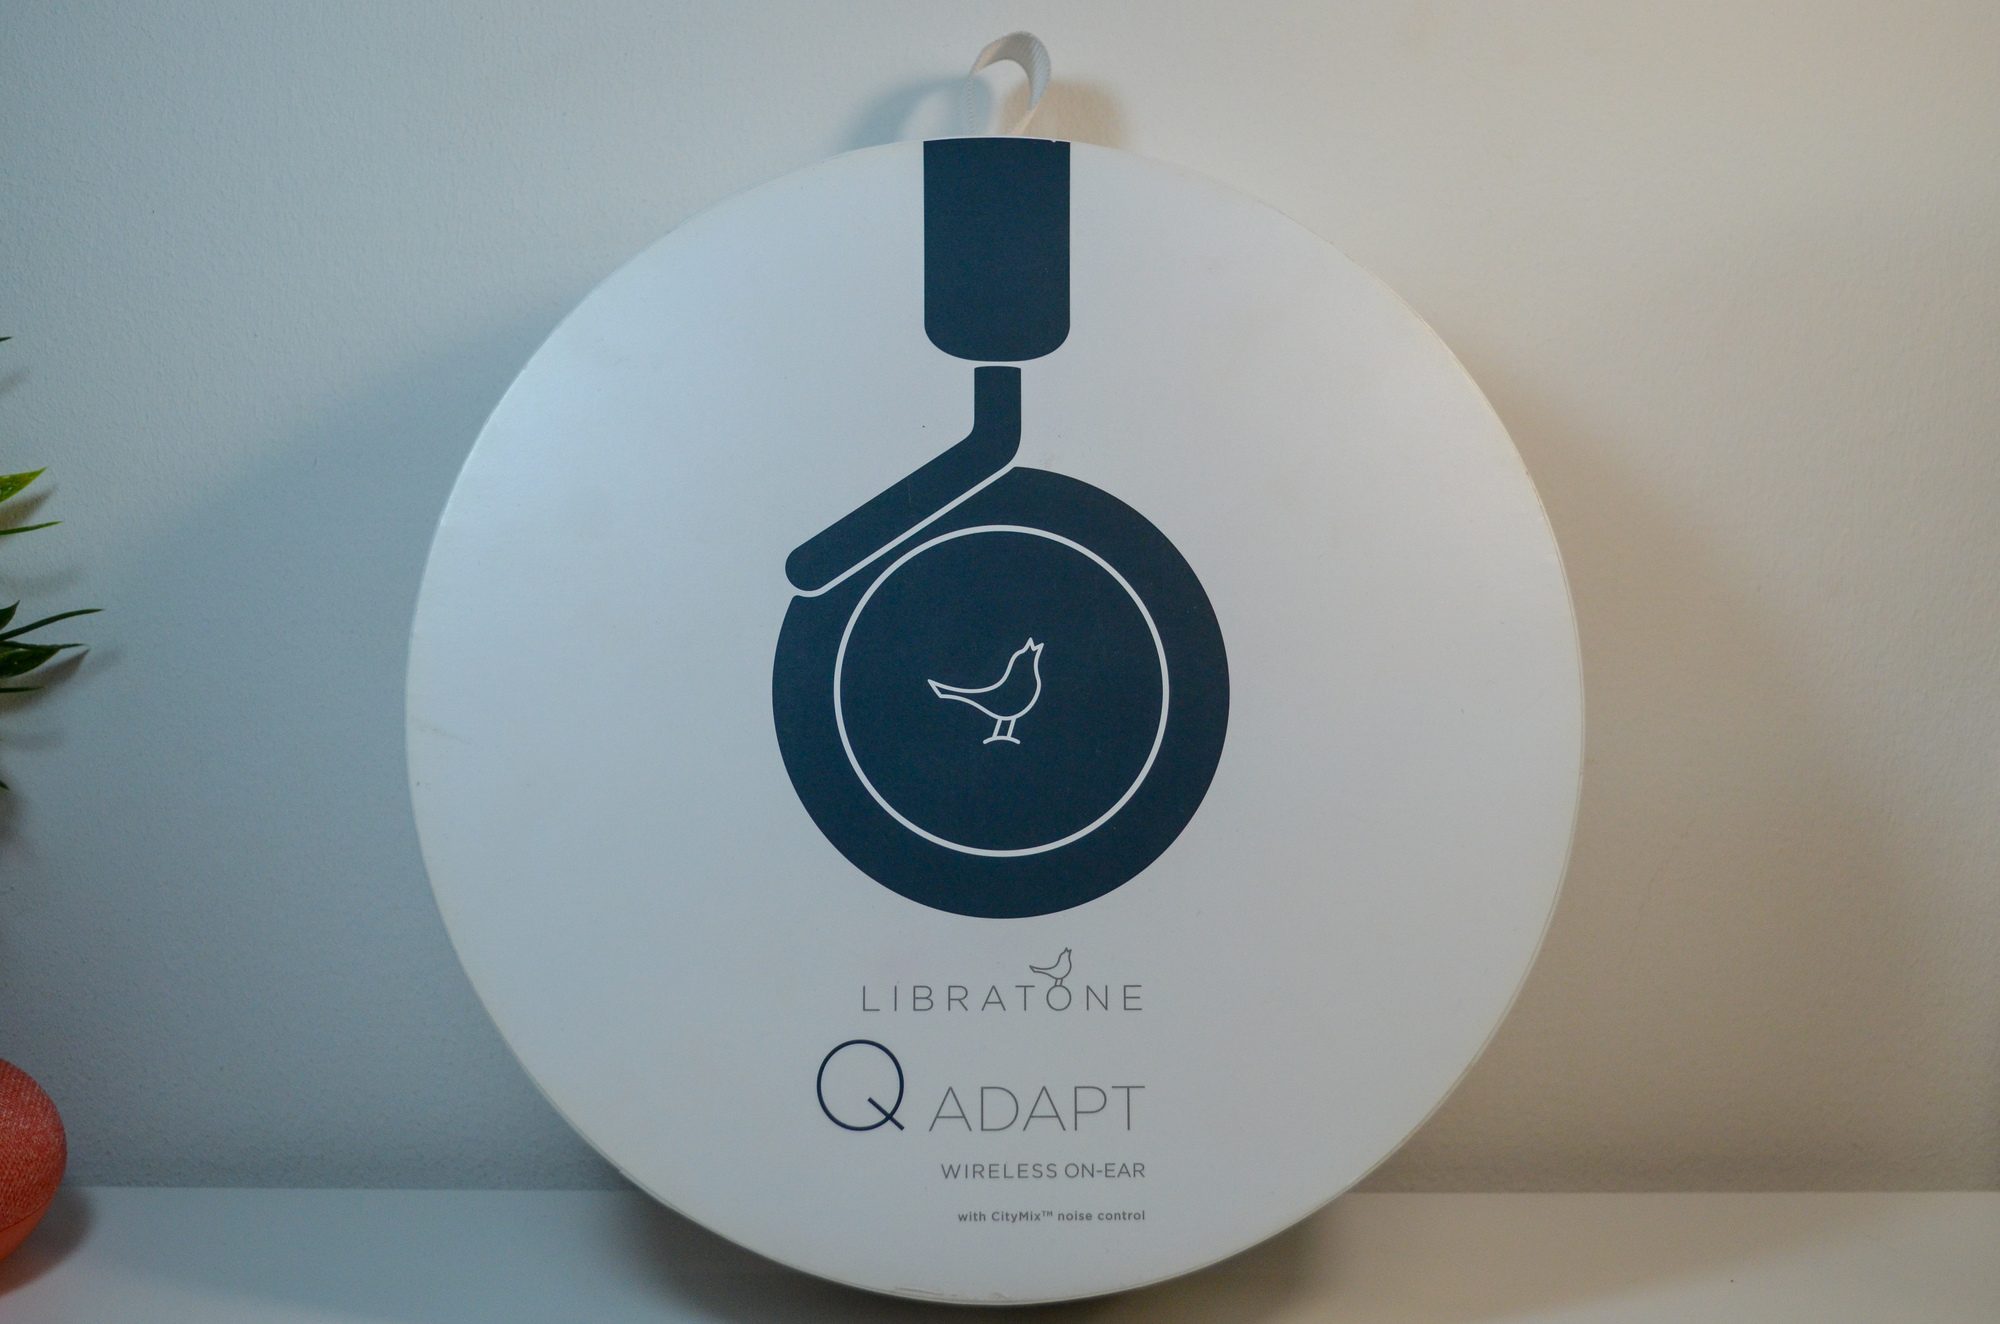 Libratone DSC 0016 Test – Libratone Q Adapt On-Ear : Un casque de ville sans grande prétention audio